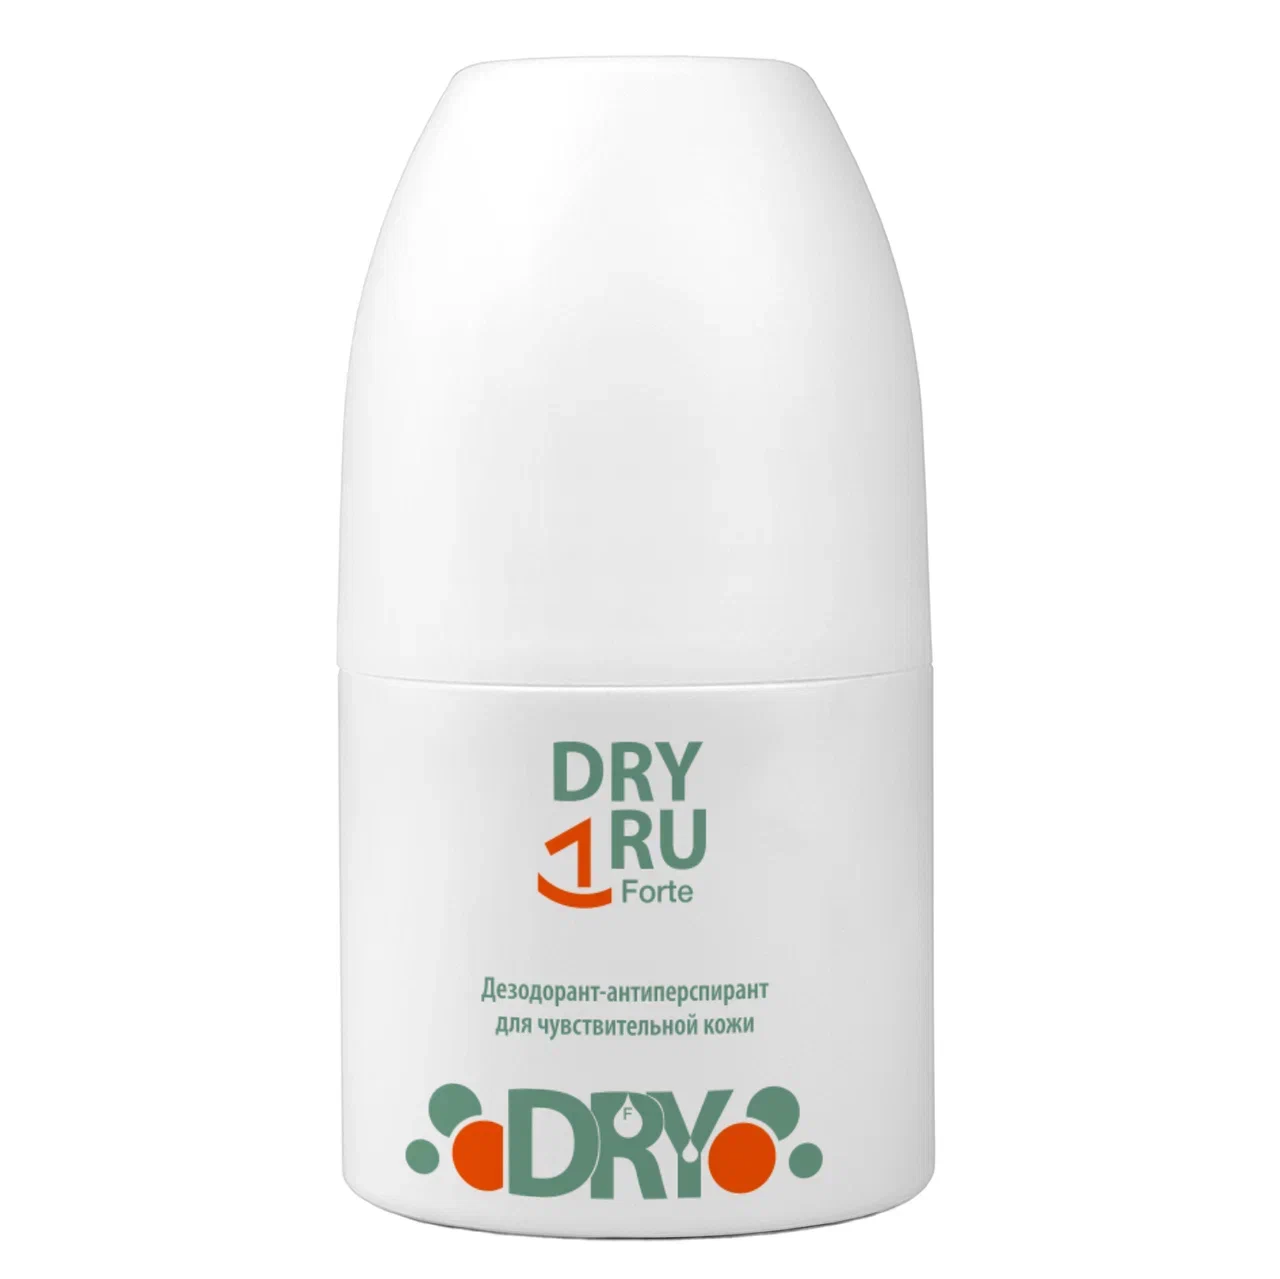 Дезодоран-антиперспирантт DRY RU Forte мужской, шариковый, от пота и запаха 50 мл дезодорант dry ru женский мужской противомикробный спрей для ног от пота и запаха 100 мл